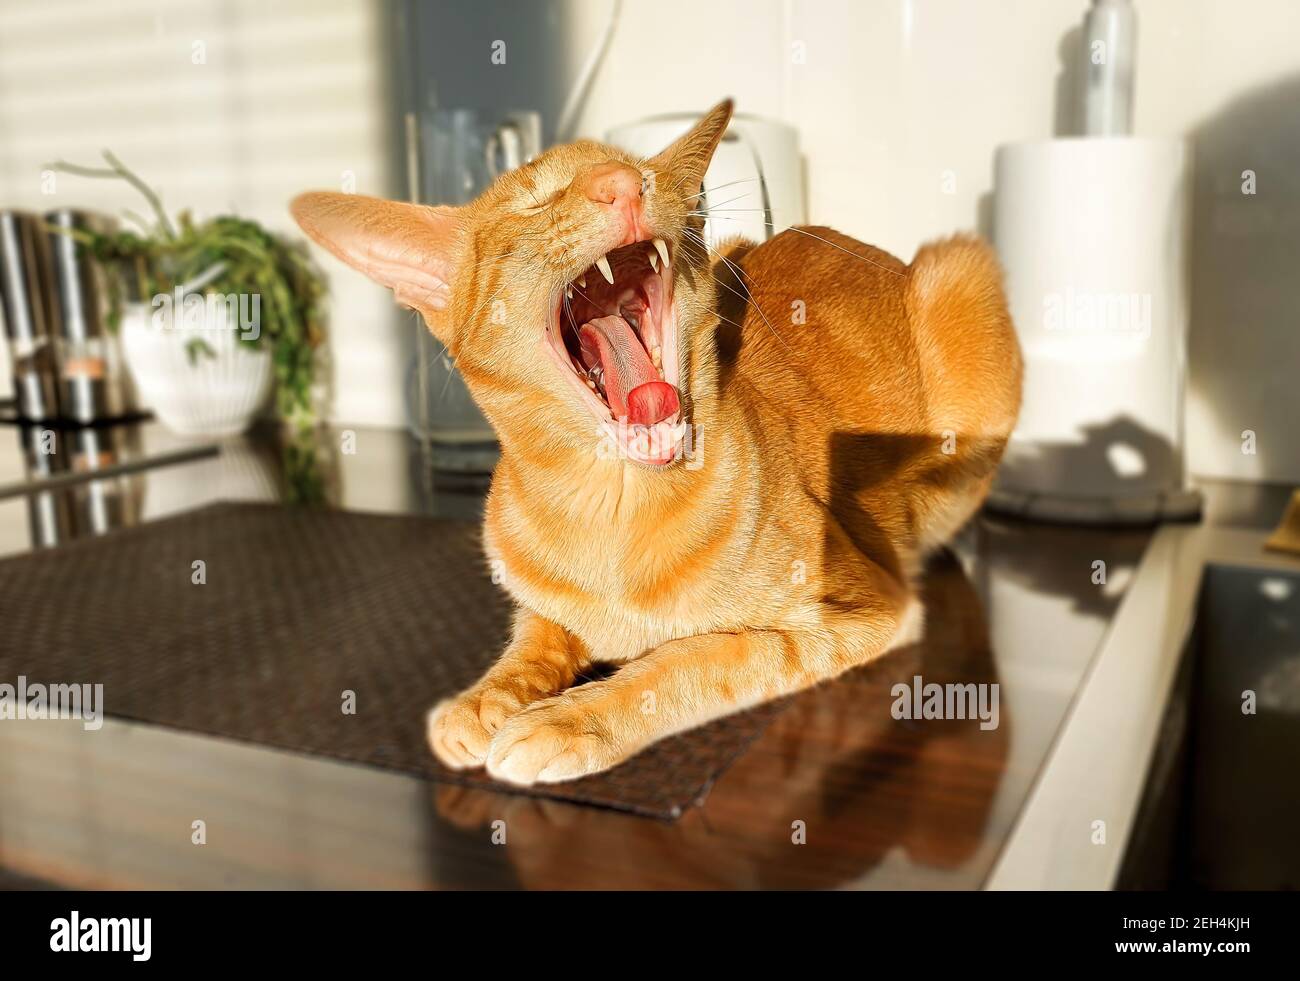 El retrato del gato rojo oriental está bostezando con boca abierta y lengua hacia fuera. Foto de stock